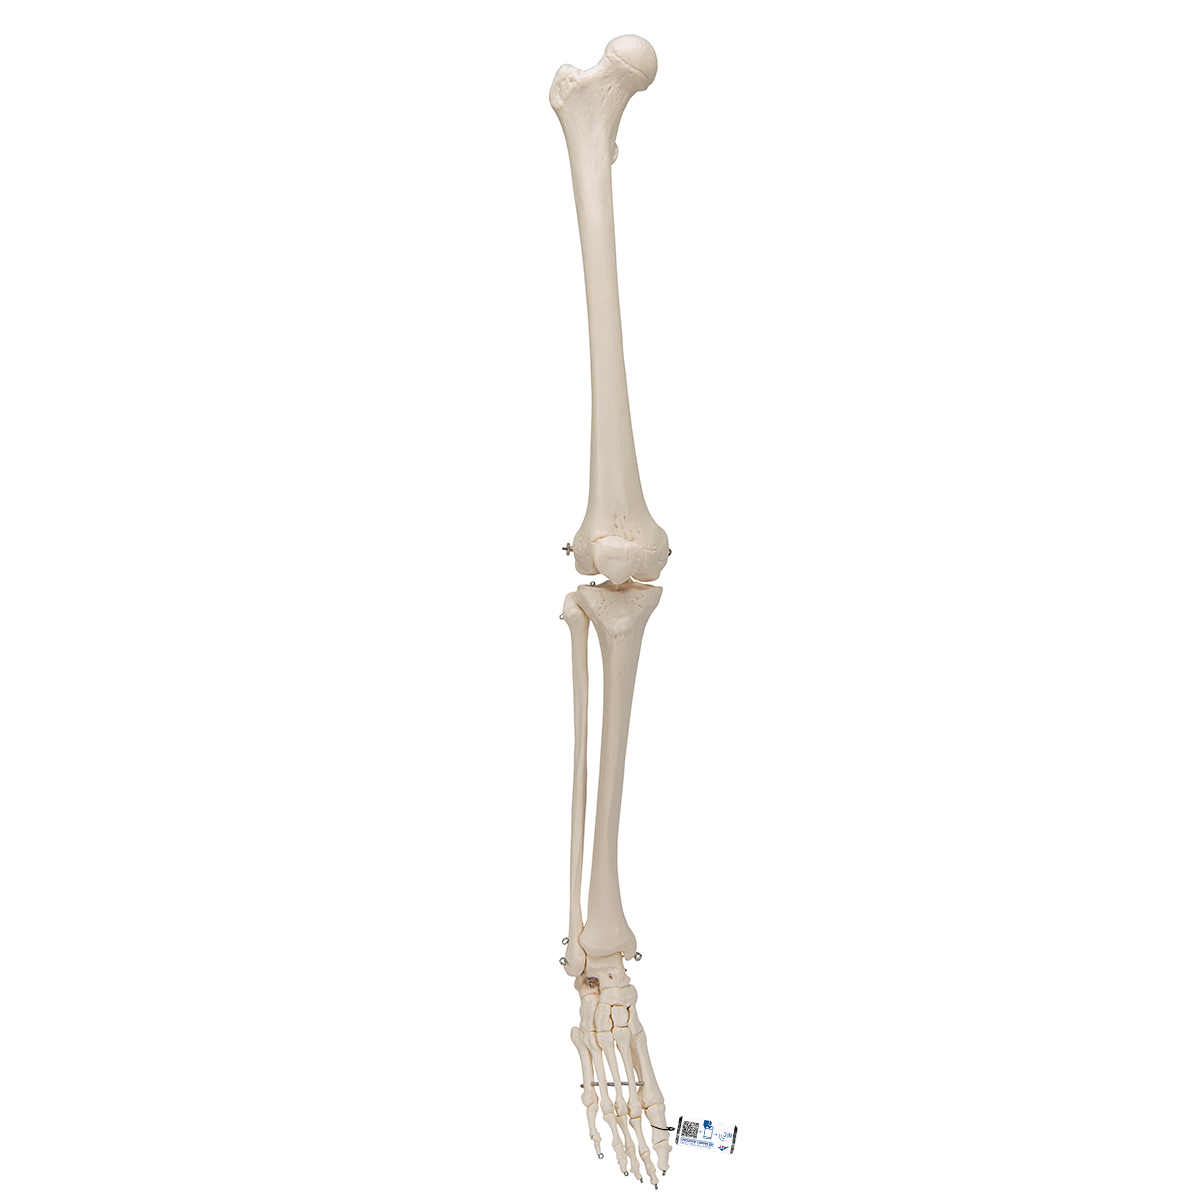 Beinskelett Modell mit Fuß - 3B Smart Anatomy, Bestellnummer 1019359, A35, 3B Scientific